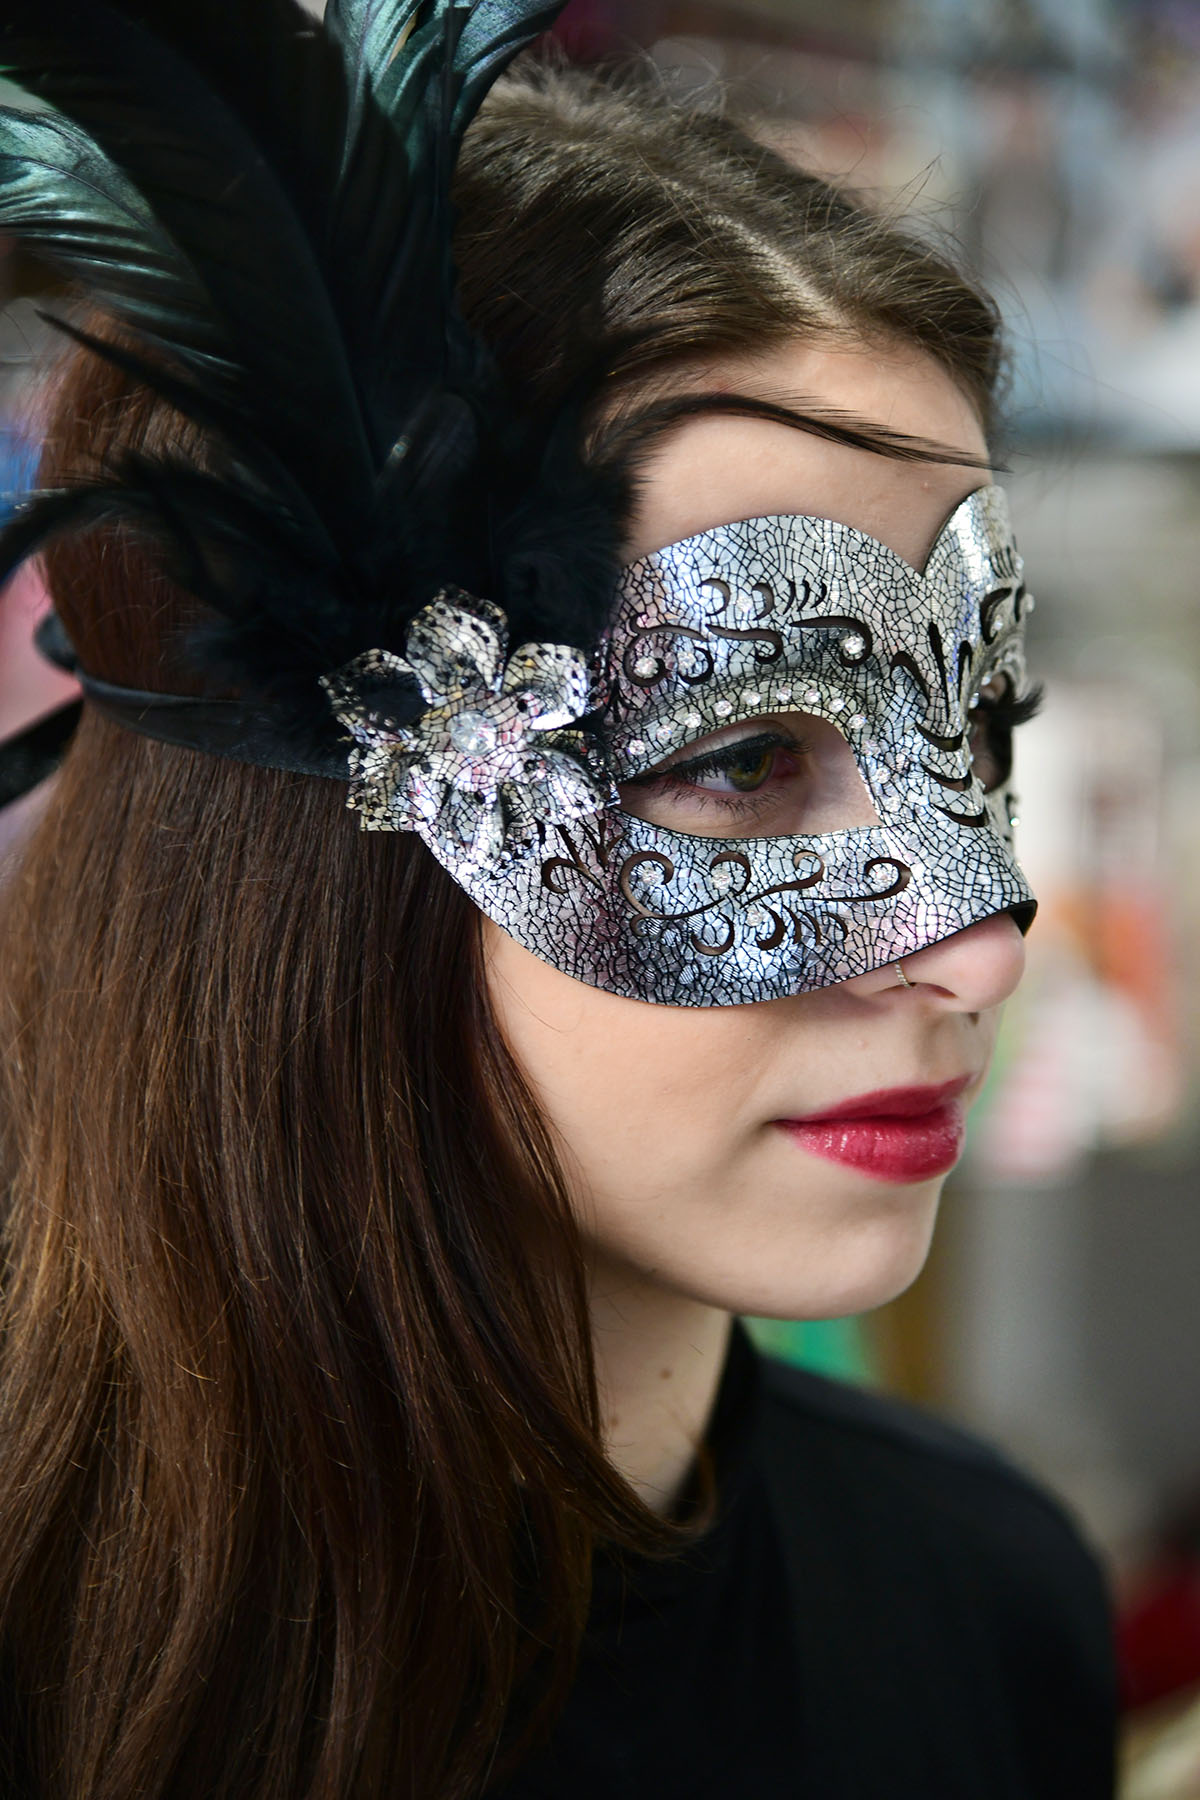 Futura Nova ima najljepše maske i kostime za peto godišnje doba!